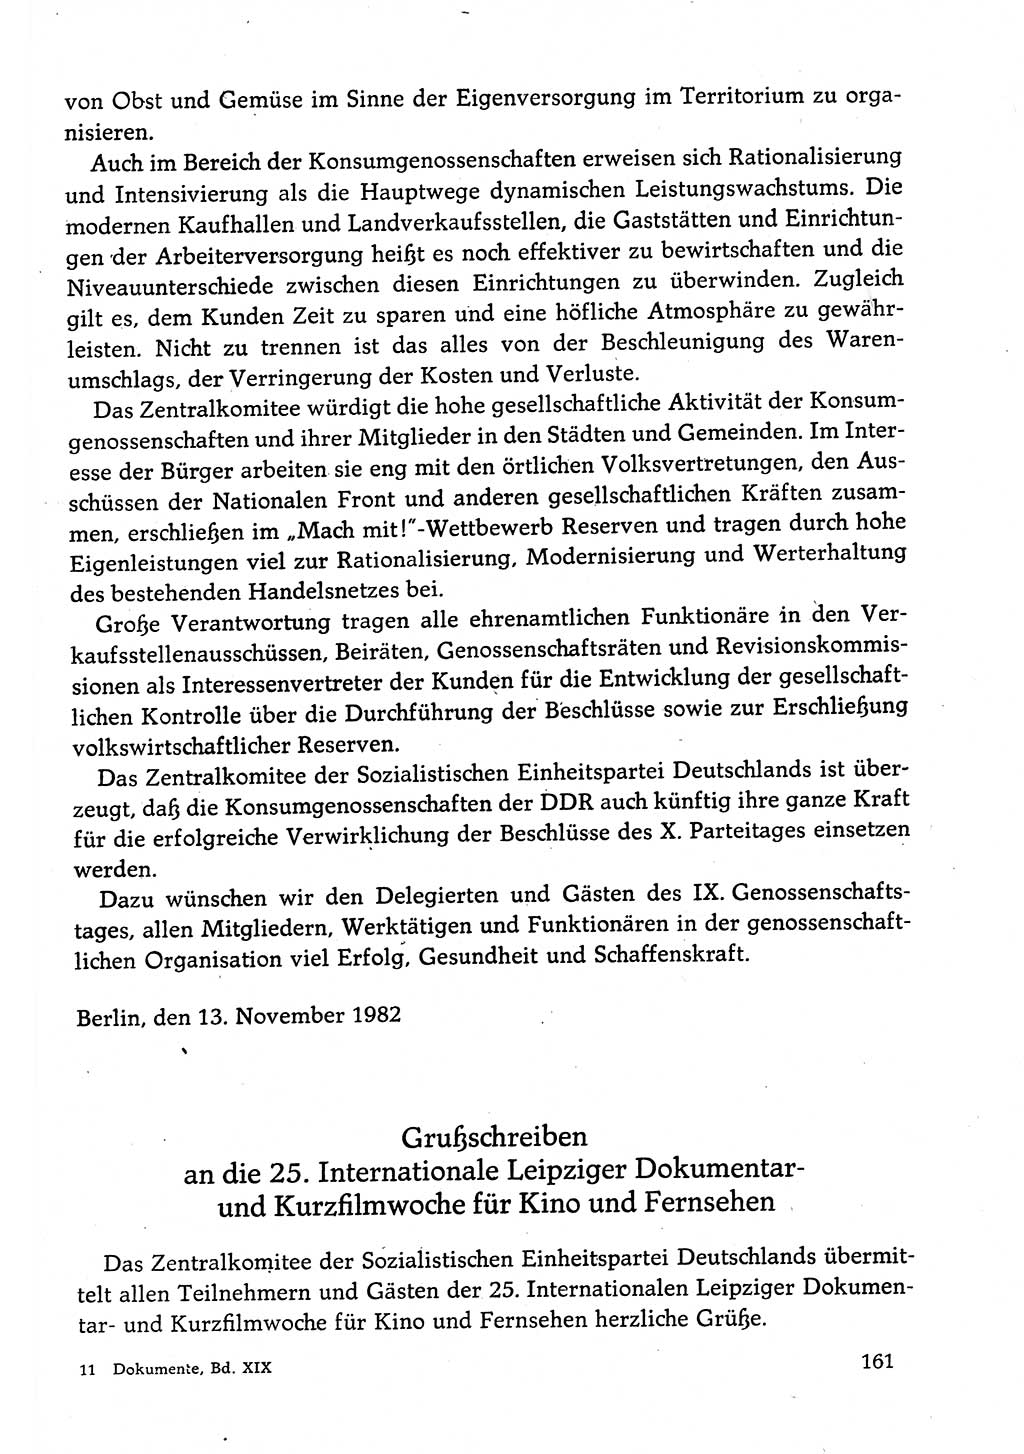 Dokumente der Sozialistischen Einheitspartei Deutschlands (SED) [Deutsche Demokratische Republik (DDR)] 1982-1983, Seite 161 (Dok. SED DDR 1982-1983, S. 161)